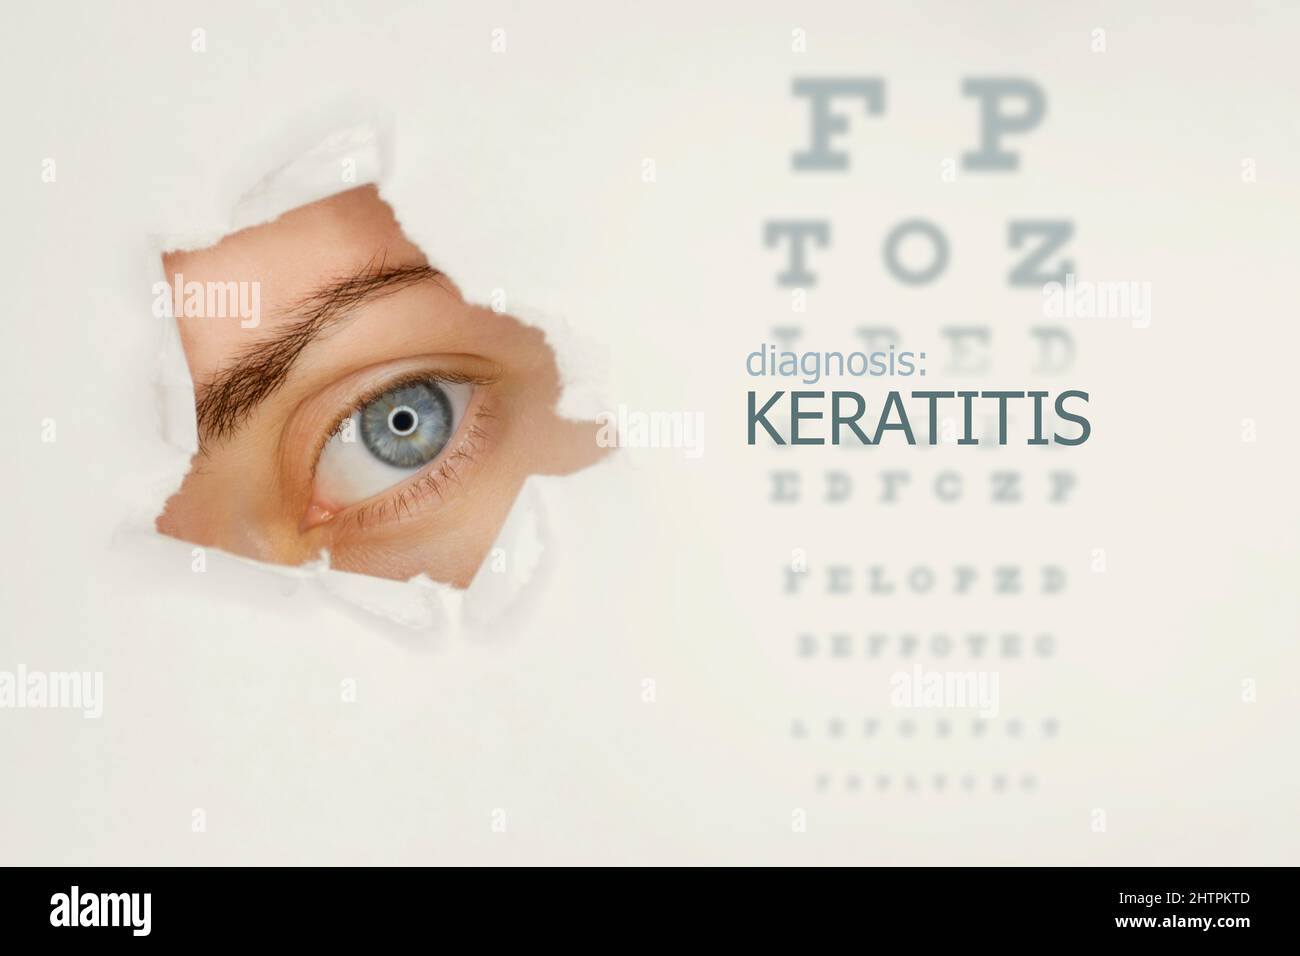 Poster della malattia di cheratite con diagramma di prova dell'occhio e occhio blu. Sfondo grigio studio Foto Stock